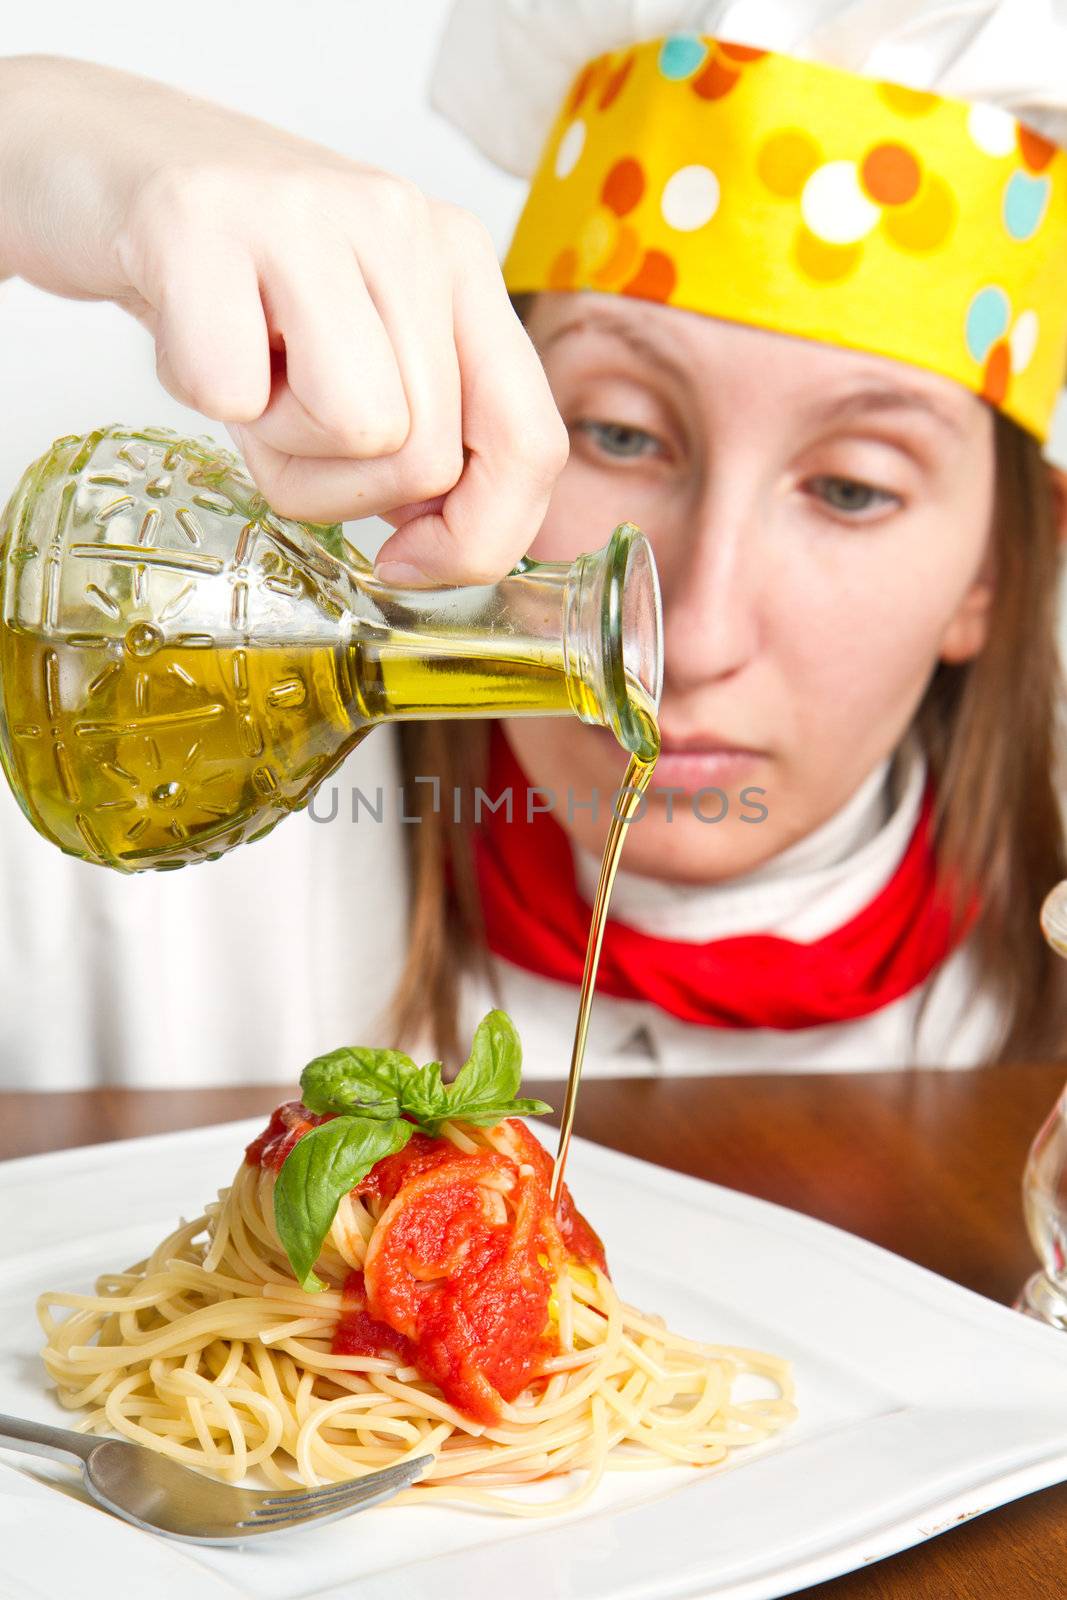  smiling chef garnish an Italian pasta dish by lsantilli